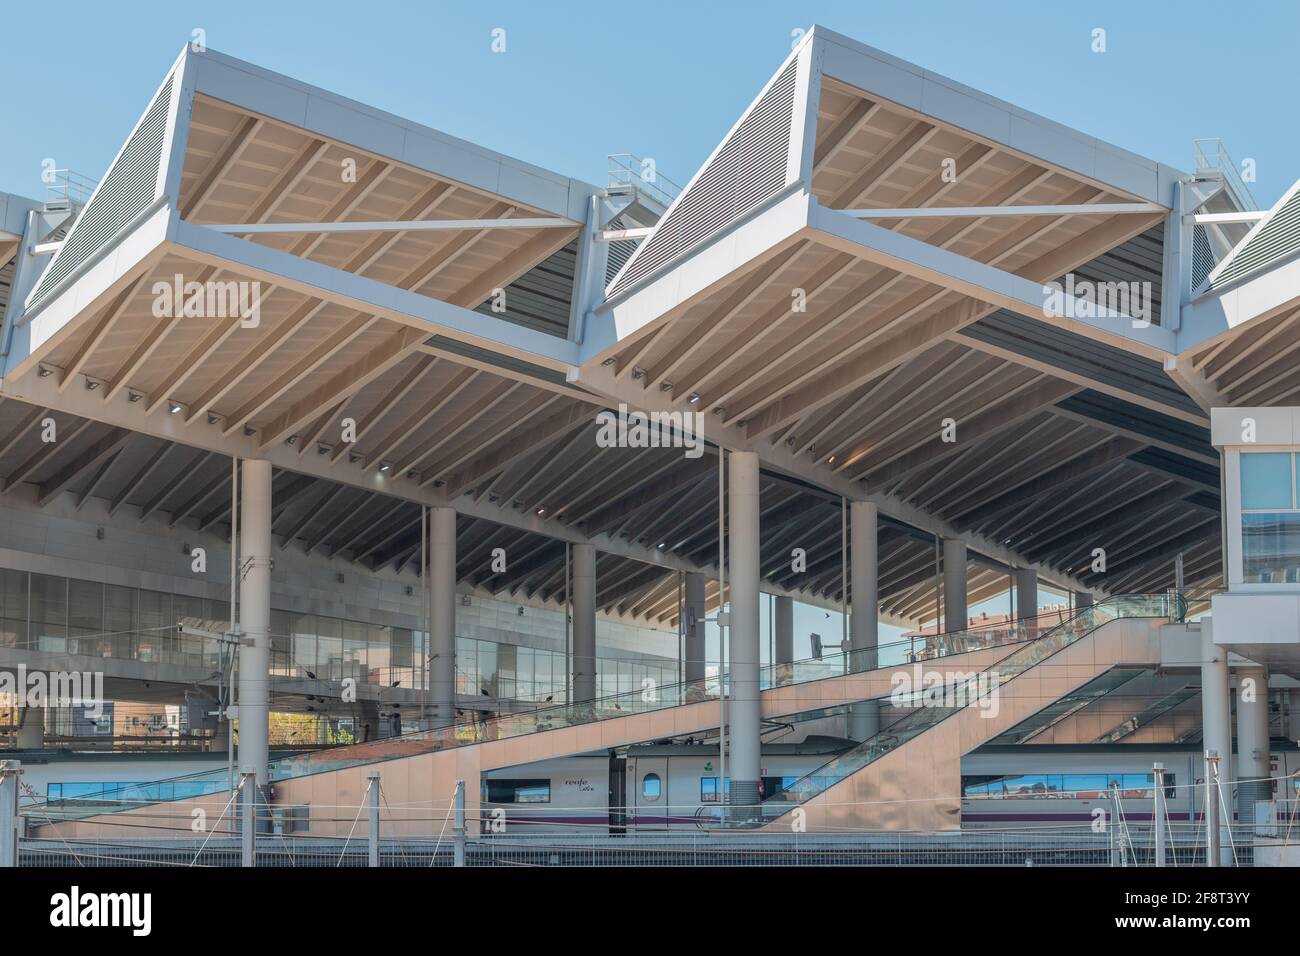 MADRID, SPAIN - Apr 09, 2021: Techo geometrico de la estacion de Atocha en Madrid Stock Photo